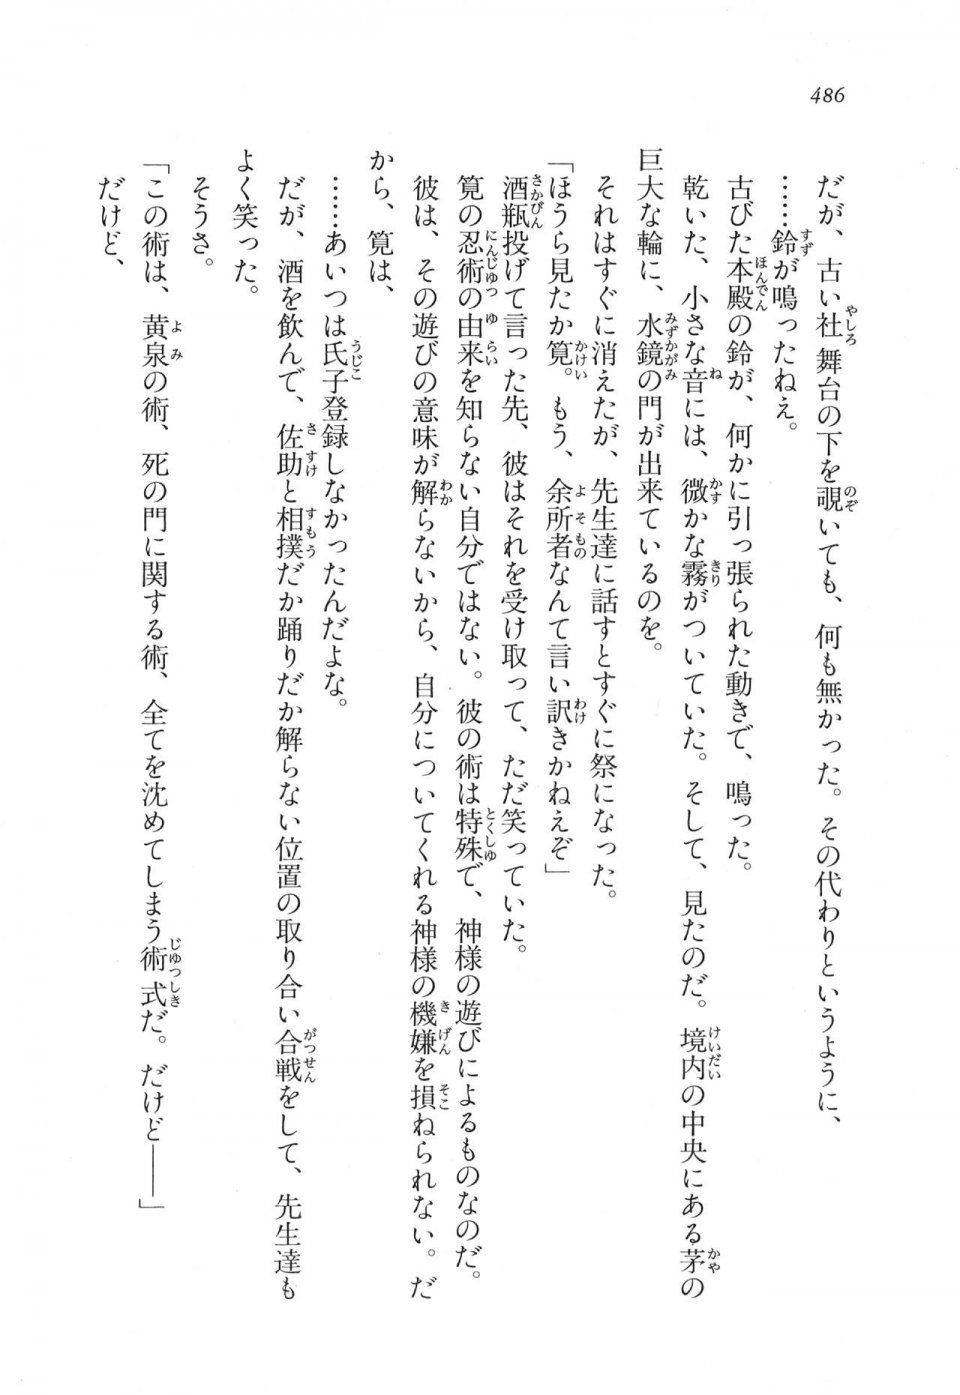 Kyoukai Senjou no Horizon LN Vol 11(5A) - Photo #486